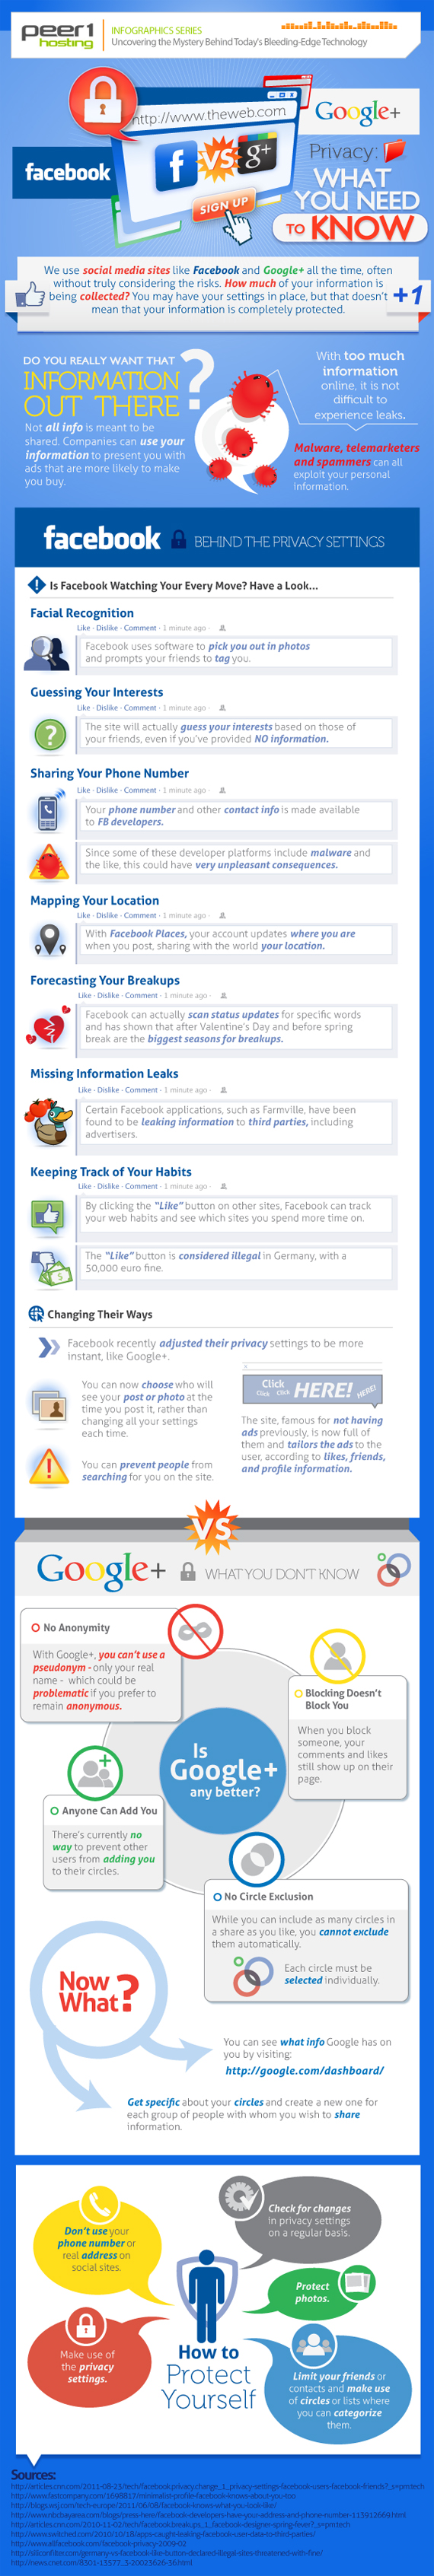 Infographie : La vie privée vue par Facebook et Google+